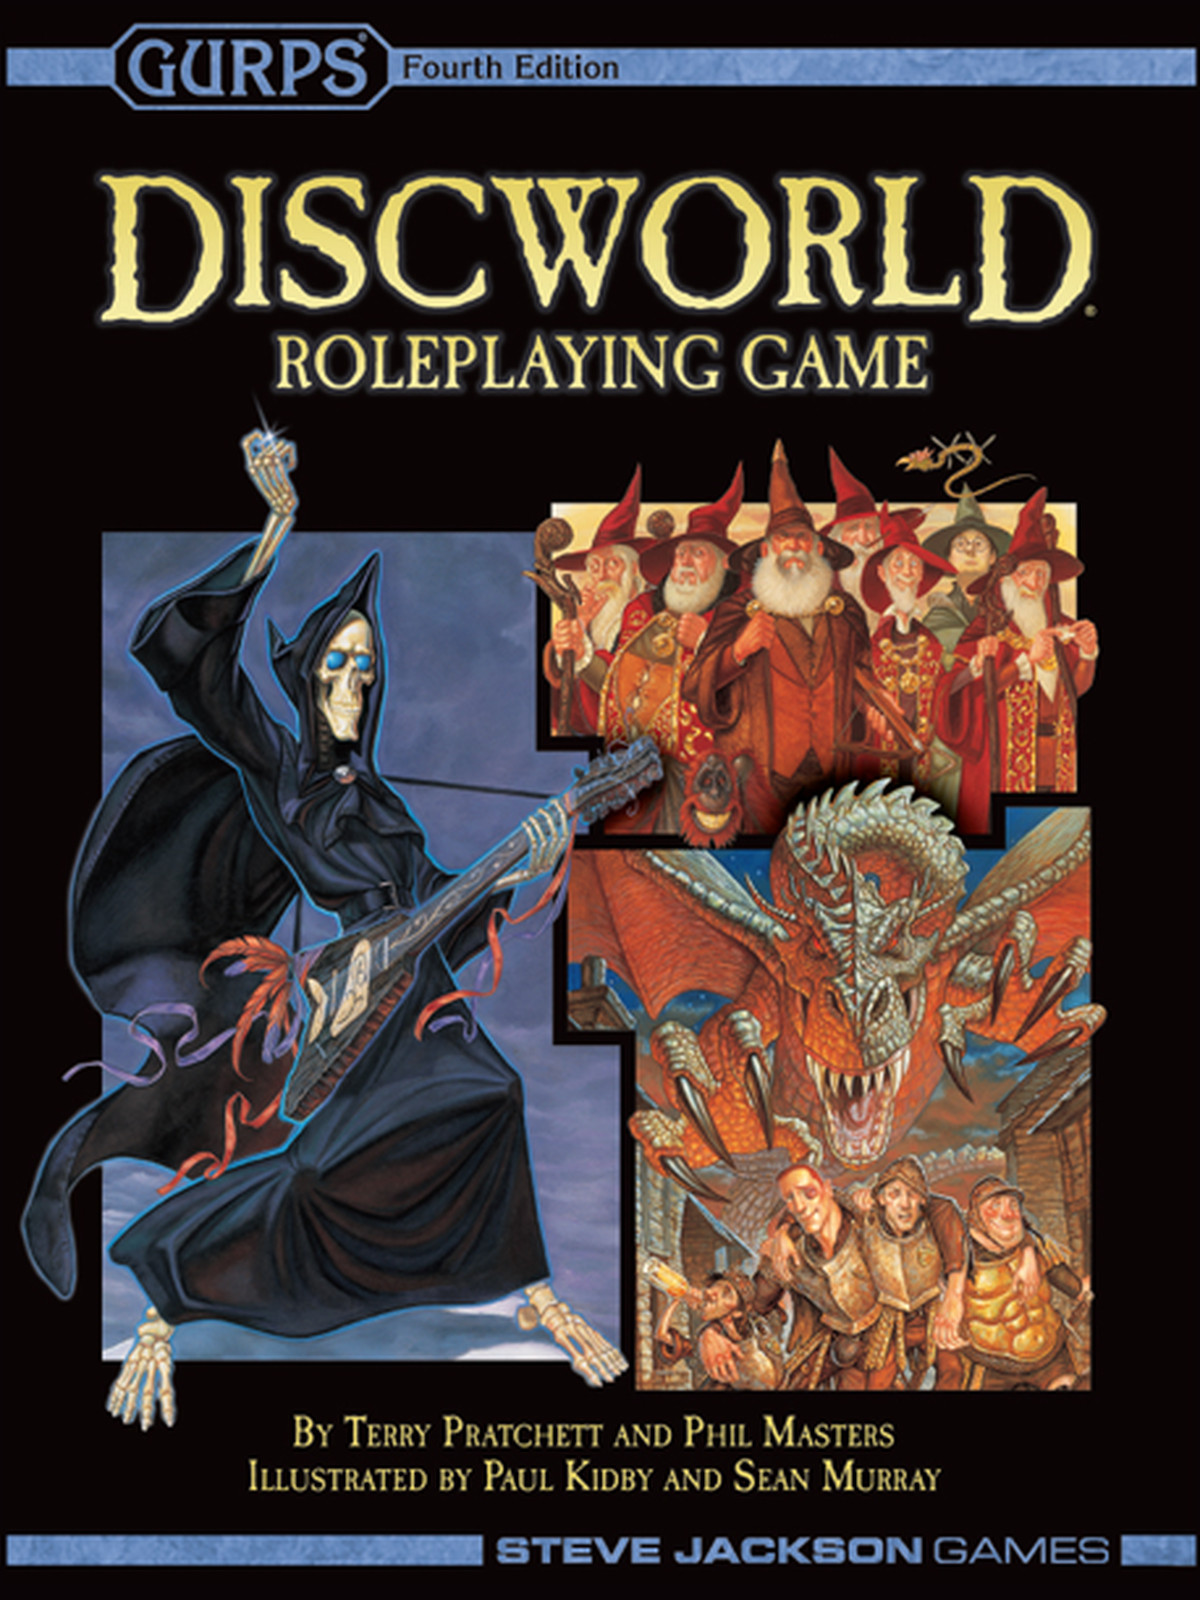 La couverture du RPG Discworld GURPS de Steve Jackson Games.  Il montre la Mort jouant de la guitare électrique, avec des nains ou des gnomes et un dragon poursuivant des soldats.